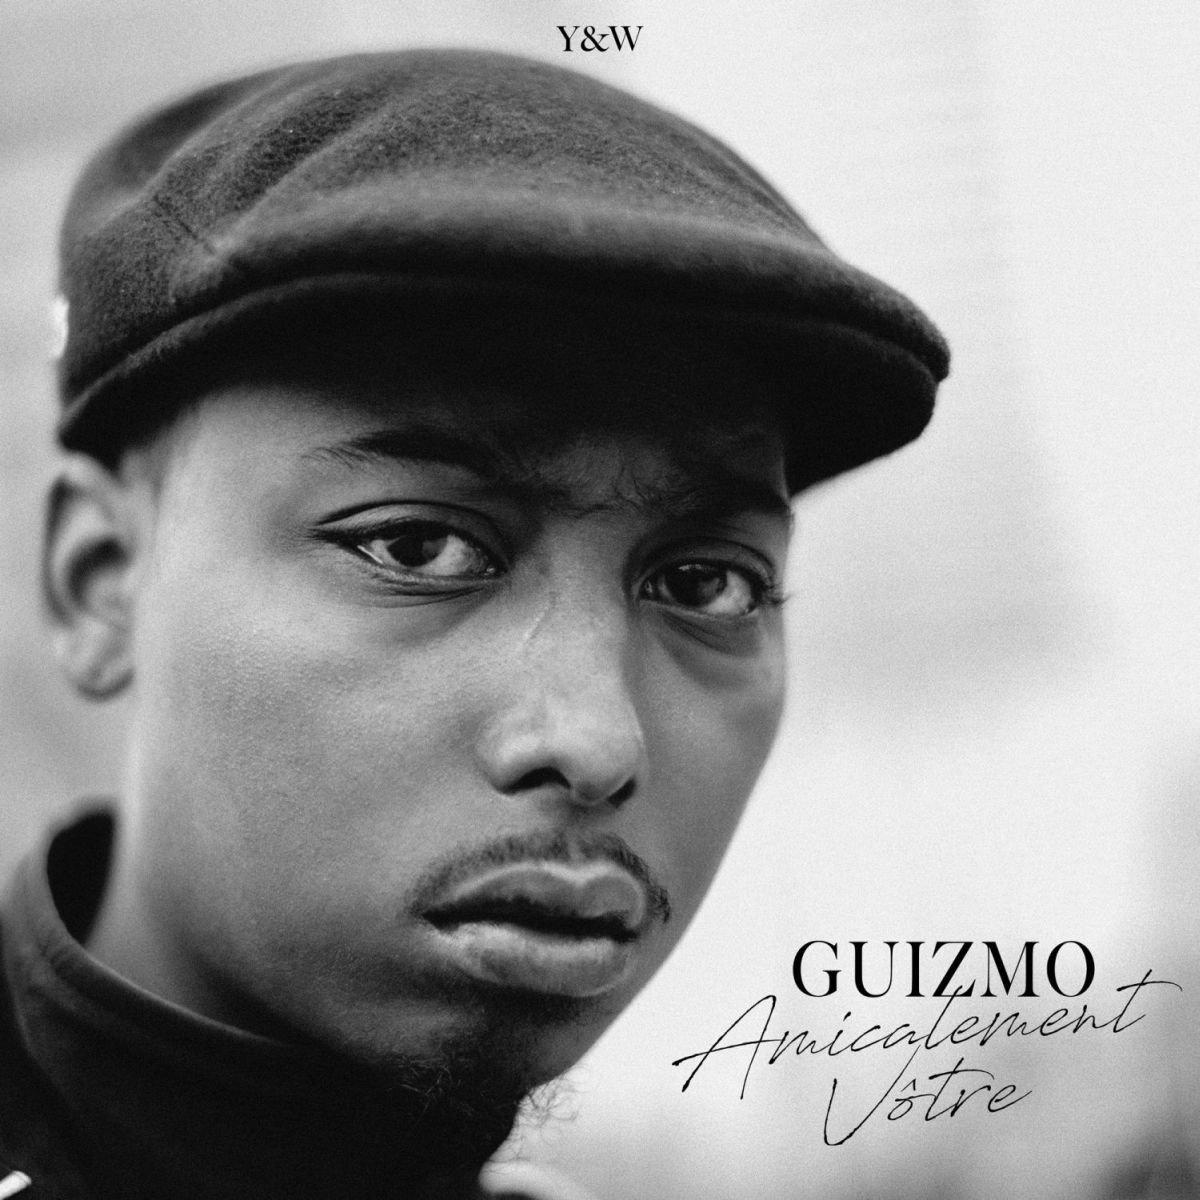 Album vinyle - Guizmo - Amicalement Votre de guizmo sur Scredboutique.com